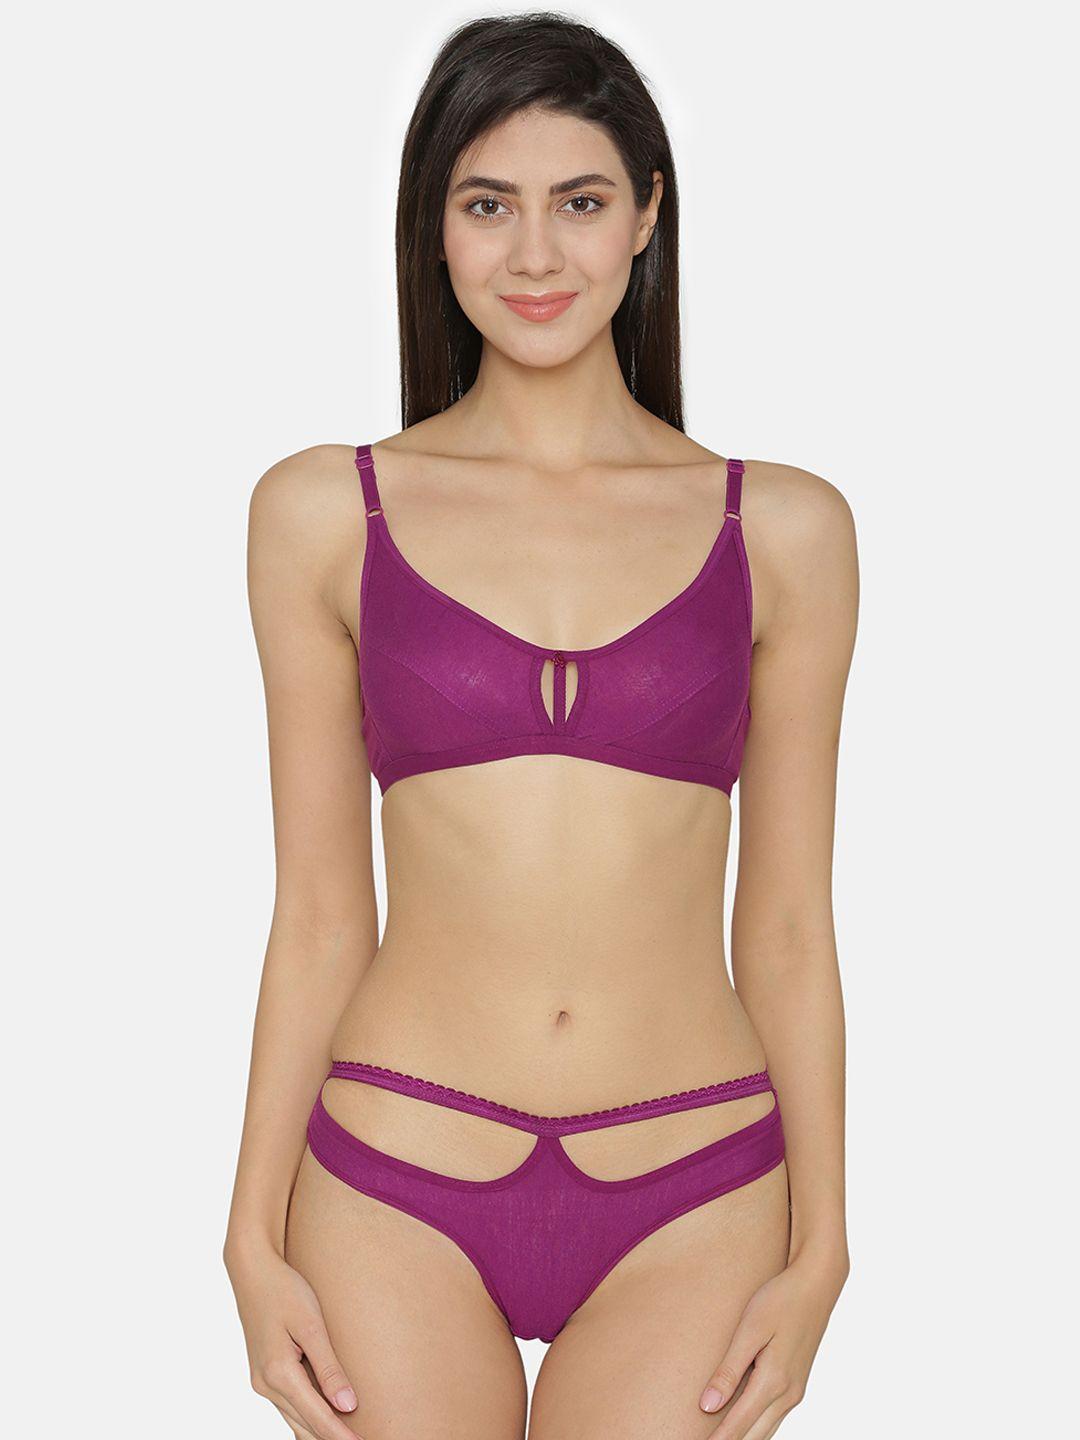 abelino-women-purple-solid-lingerie-set-set1400purple01